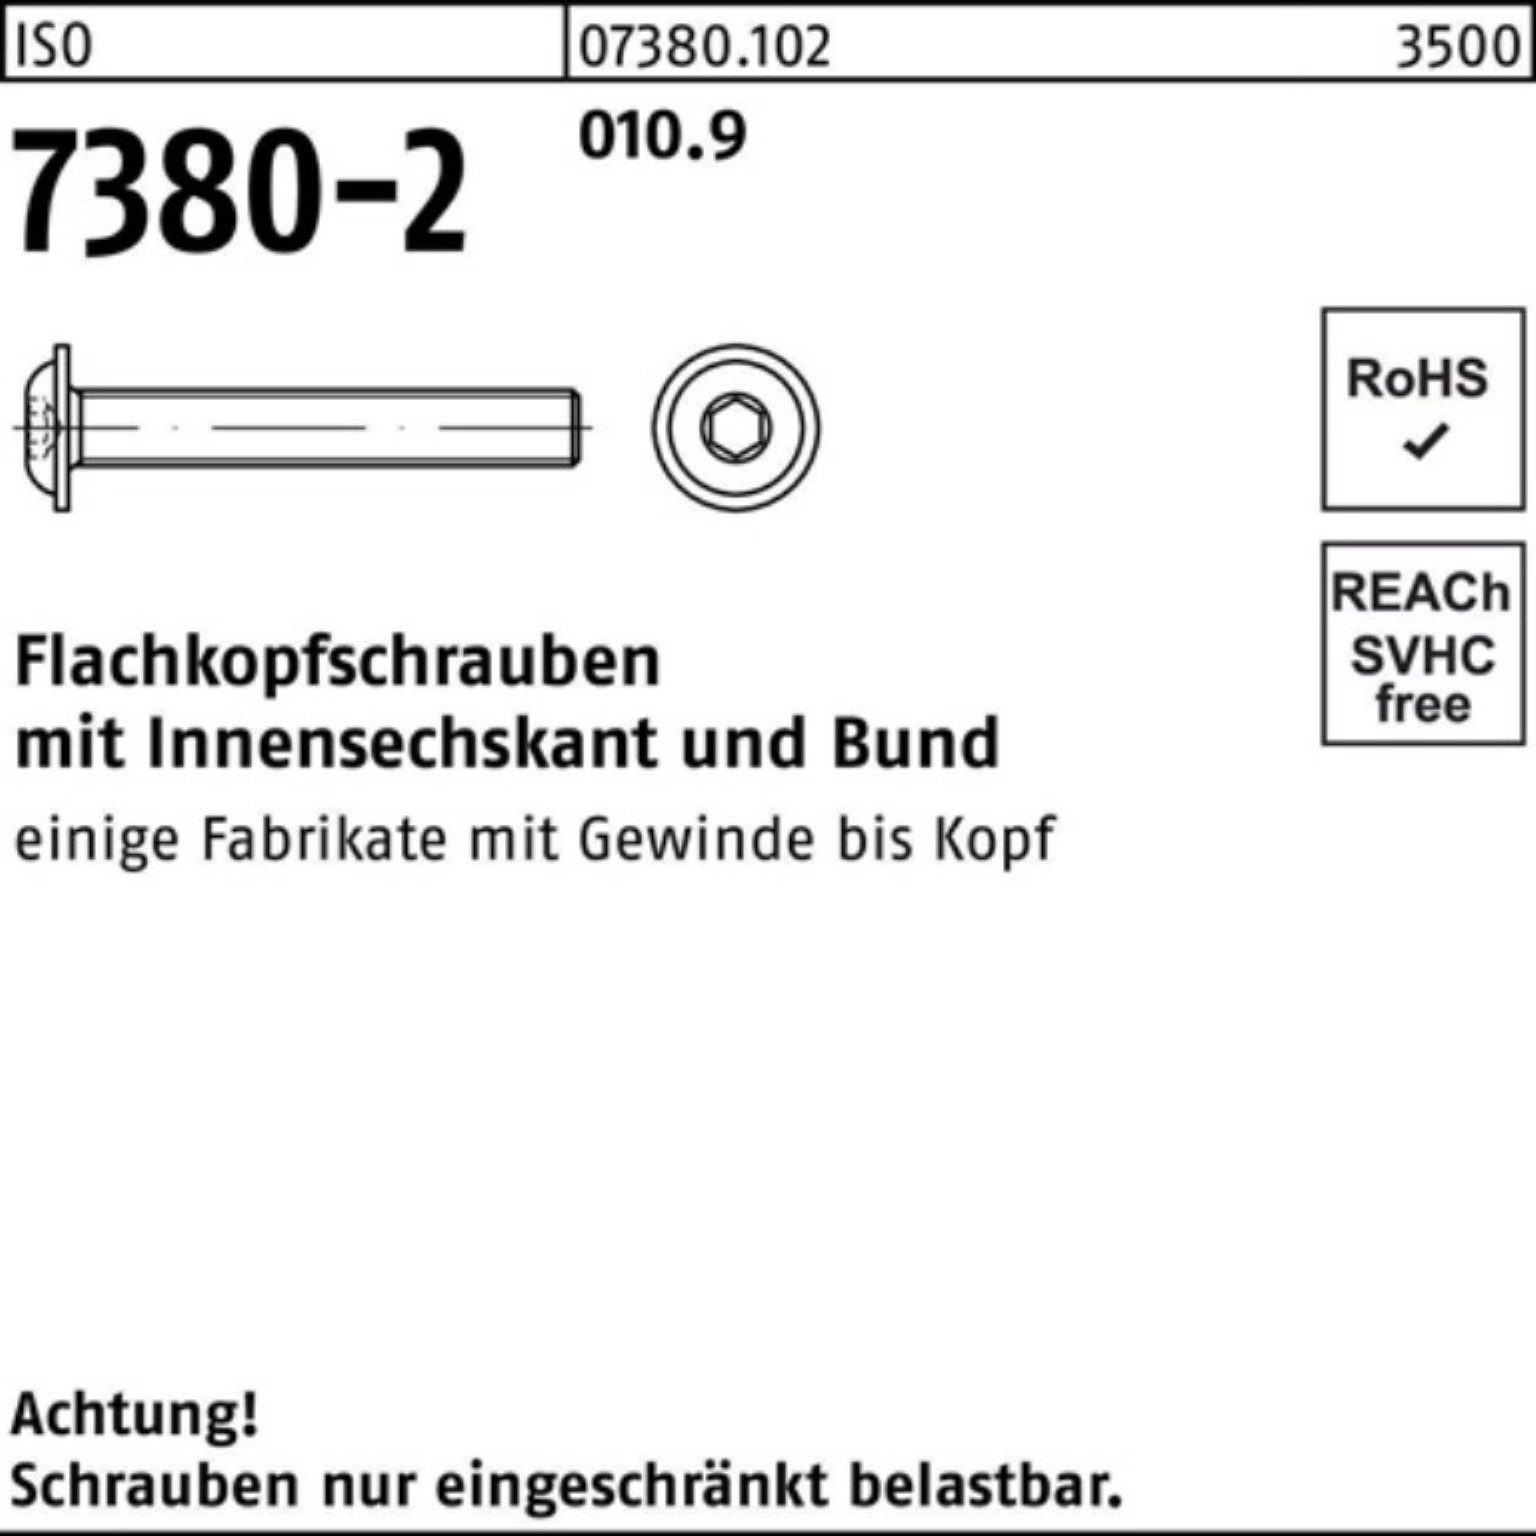 Reyher Schraube 500er Bund/Innen-6kt 7380-2 M4x 6 Pack 010.9 ISO Flachkopfschraube 500